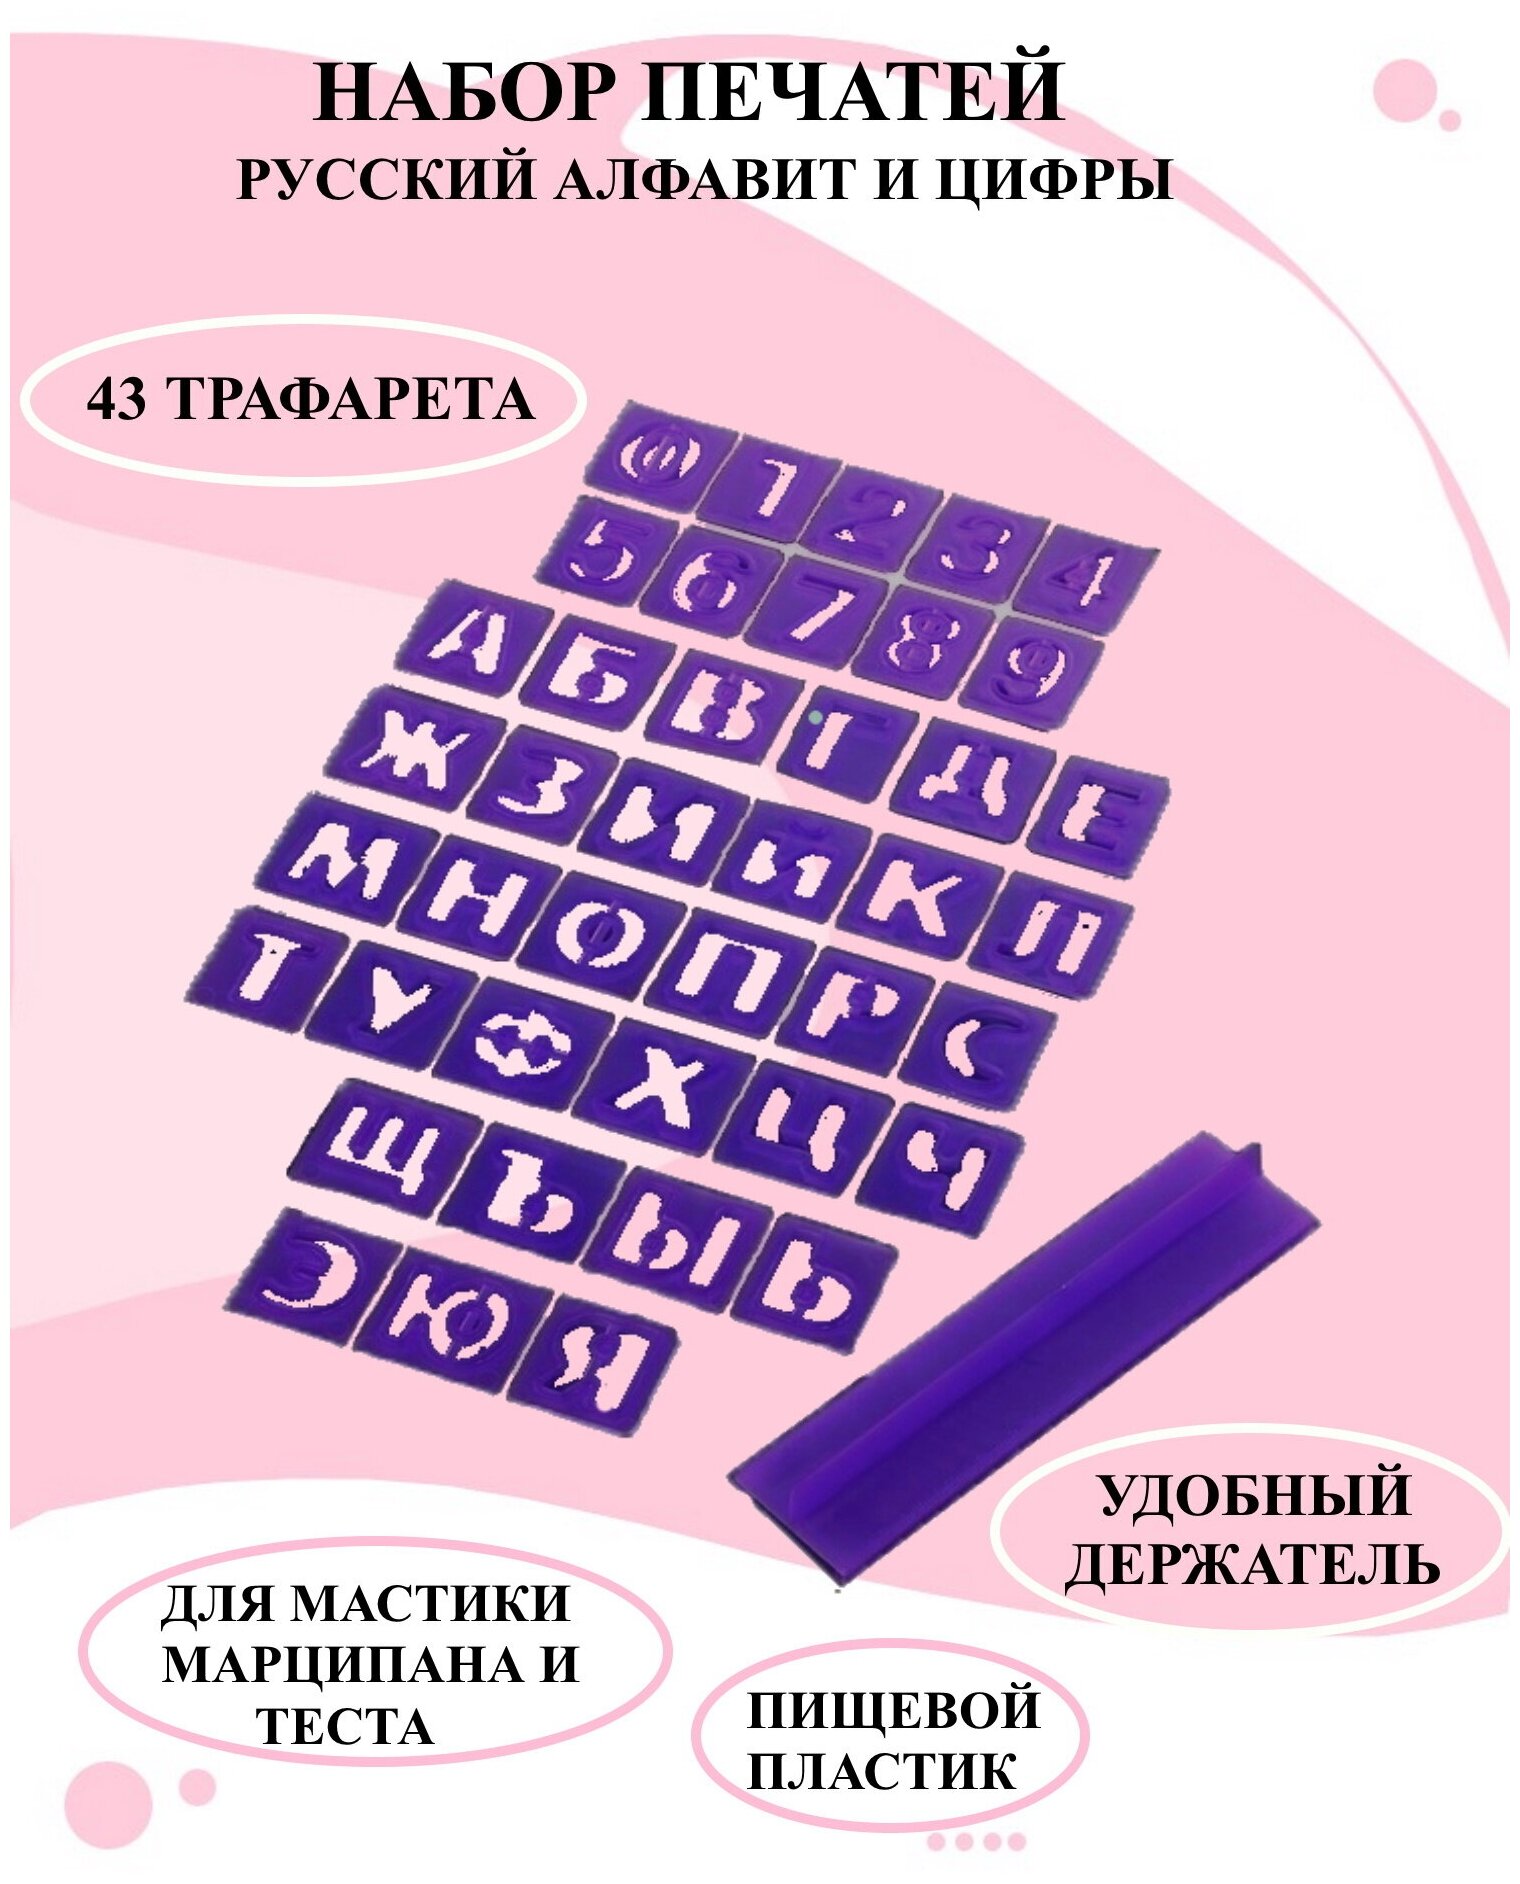 Набор печатей с держателем для марципана русский алфавит и цифры, набор трафаретов для мастики и теста.